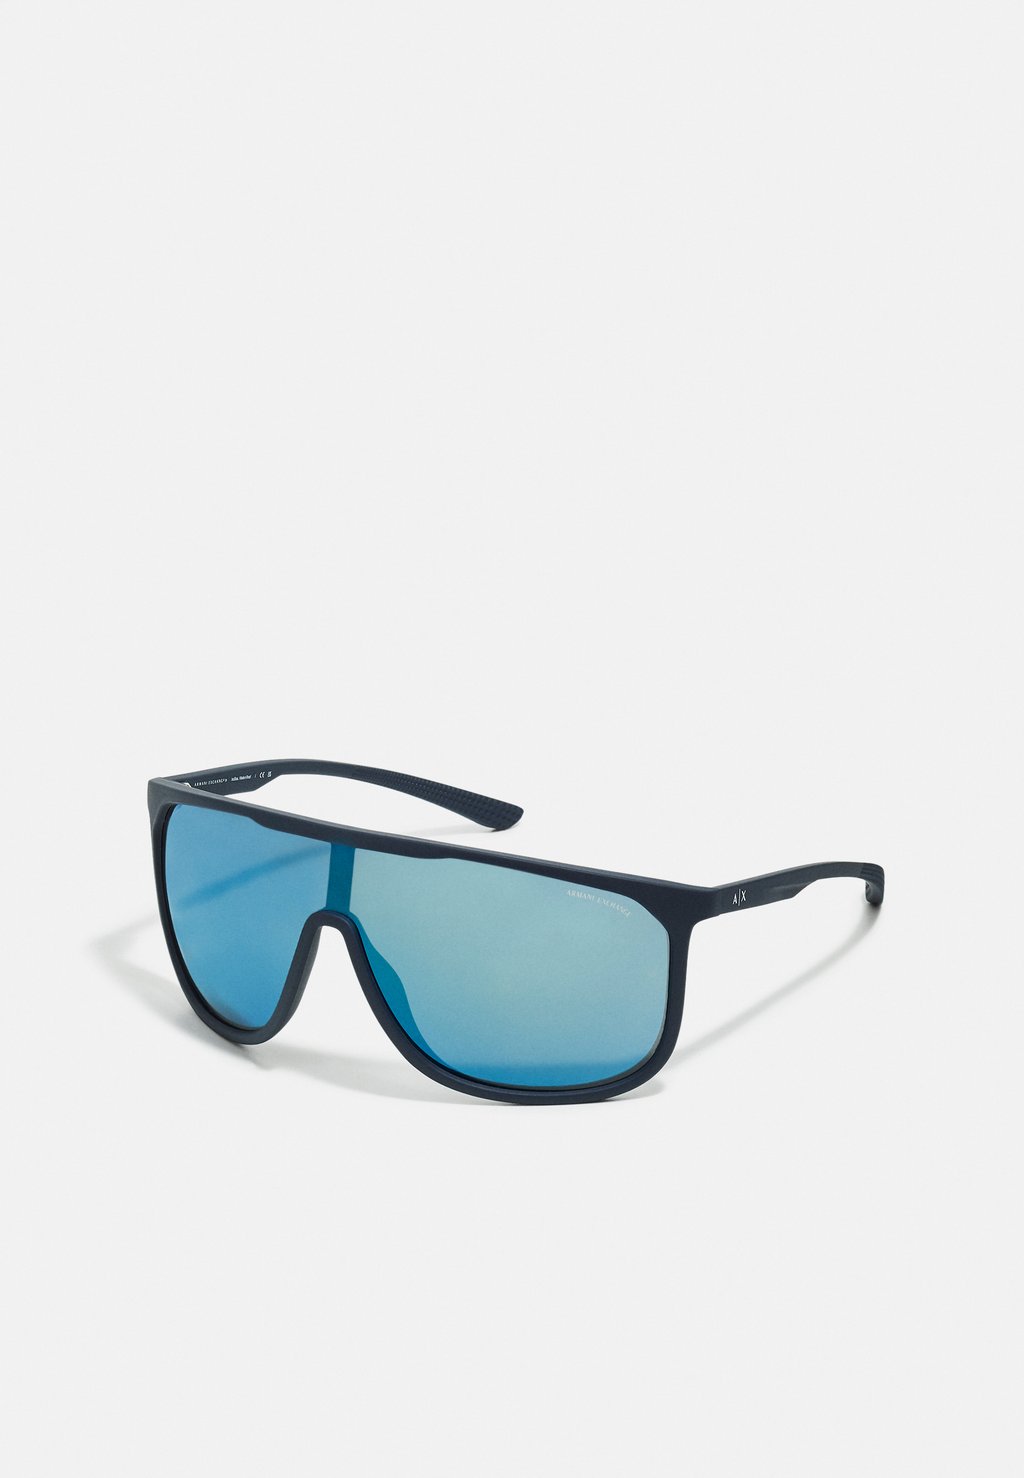 Солнцезащитные очки Armani Exchange, матовые синие